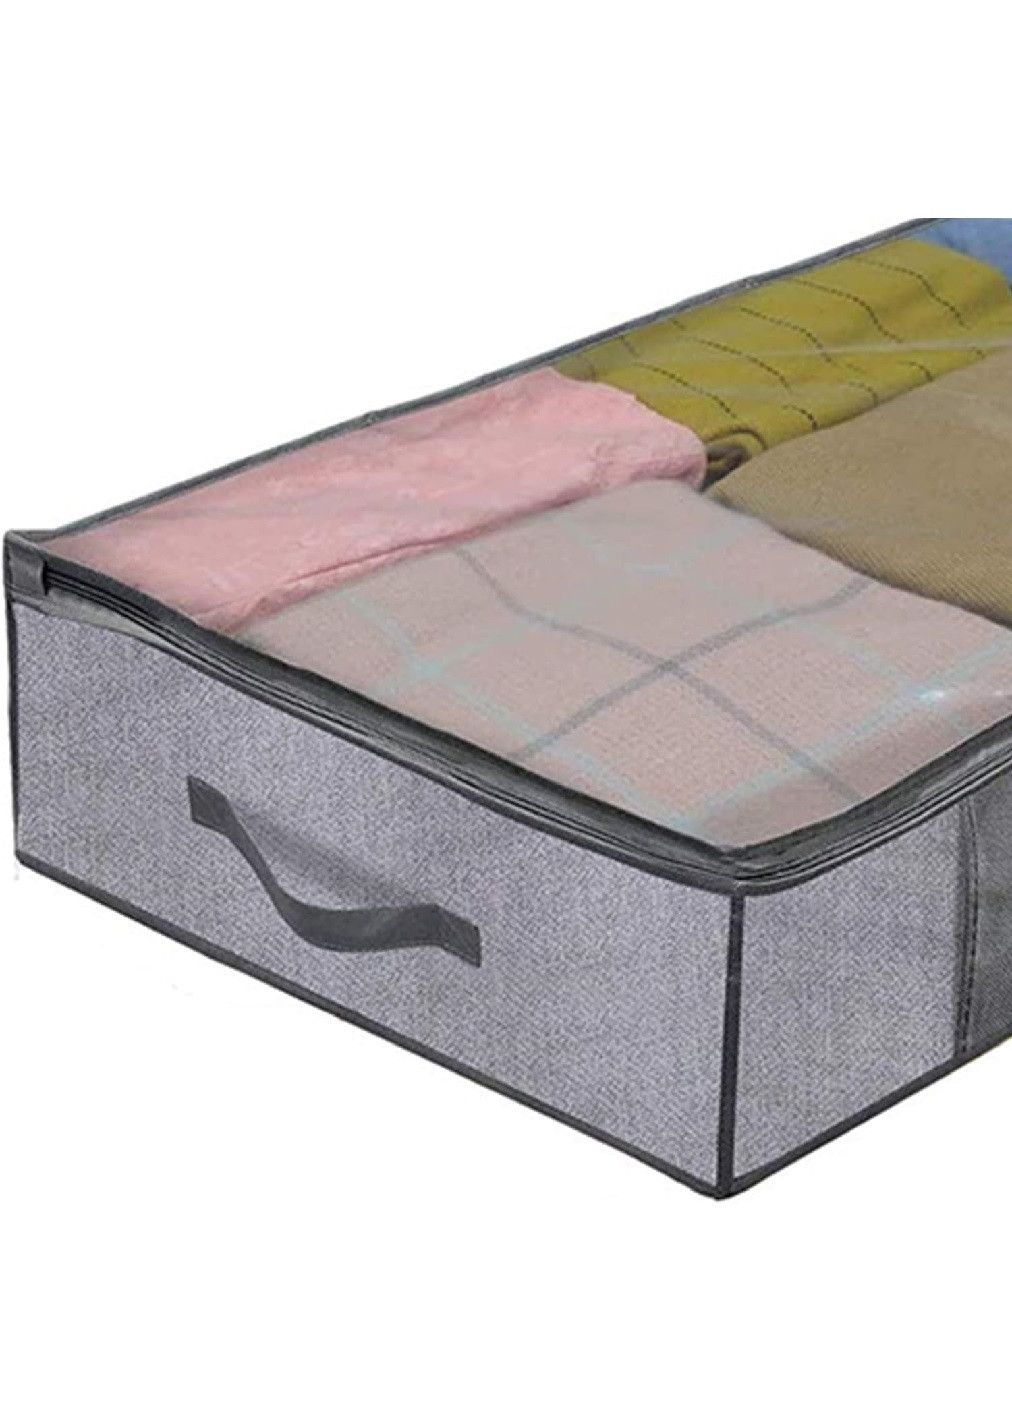 Органайзер короб ящик бокс для хранения вещей одежды белья подушек одеял игрушек 100х50х15 см (475657-Prob) Серый Unbranded (269791543)